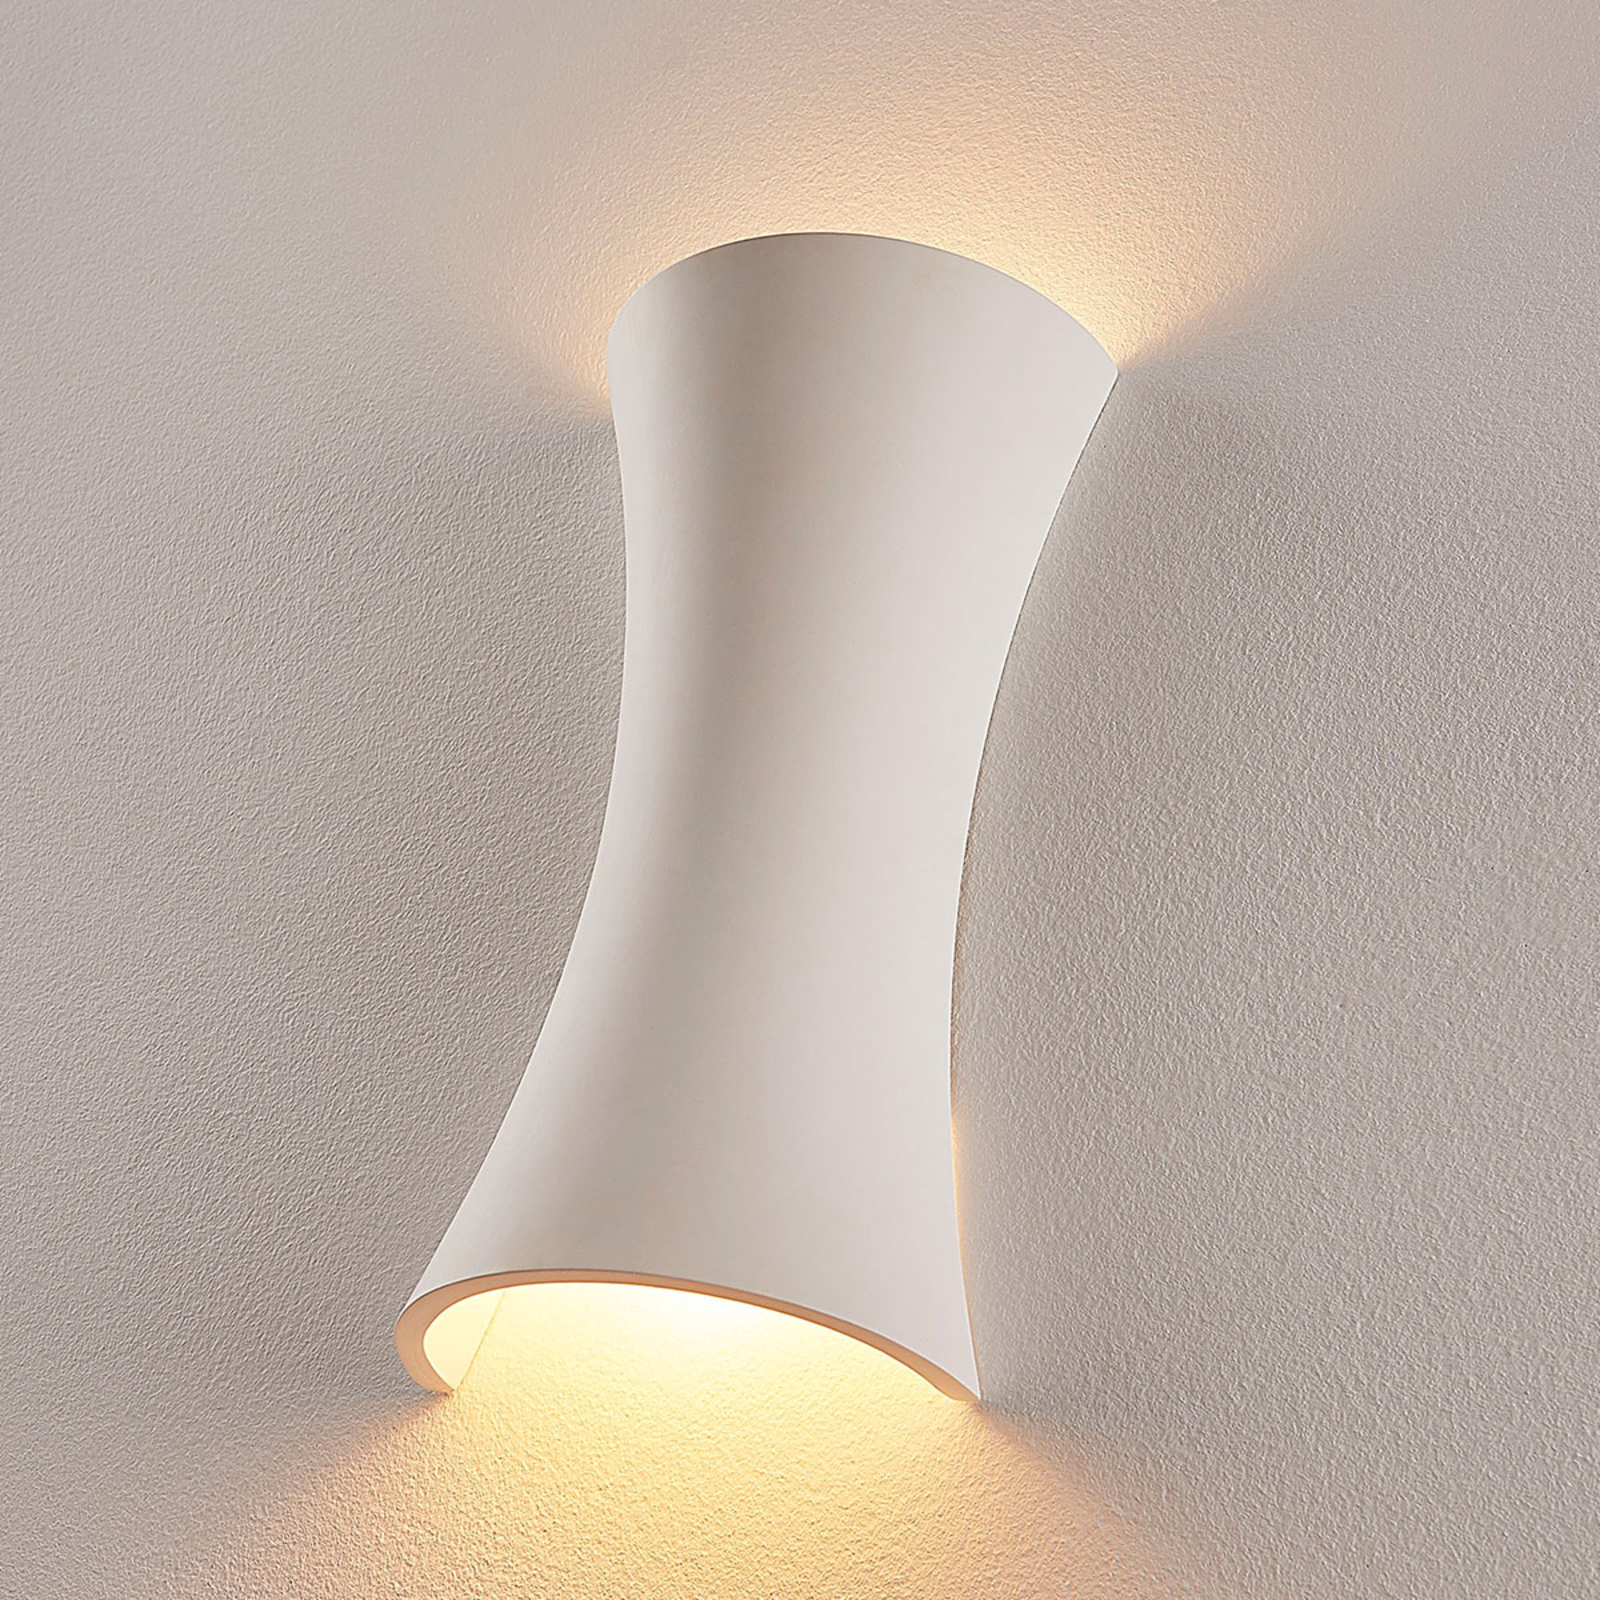 Bílé sádrové nástěnné světlo Edon, konkávní, 30 cm